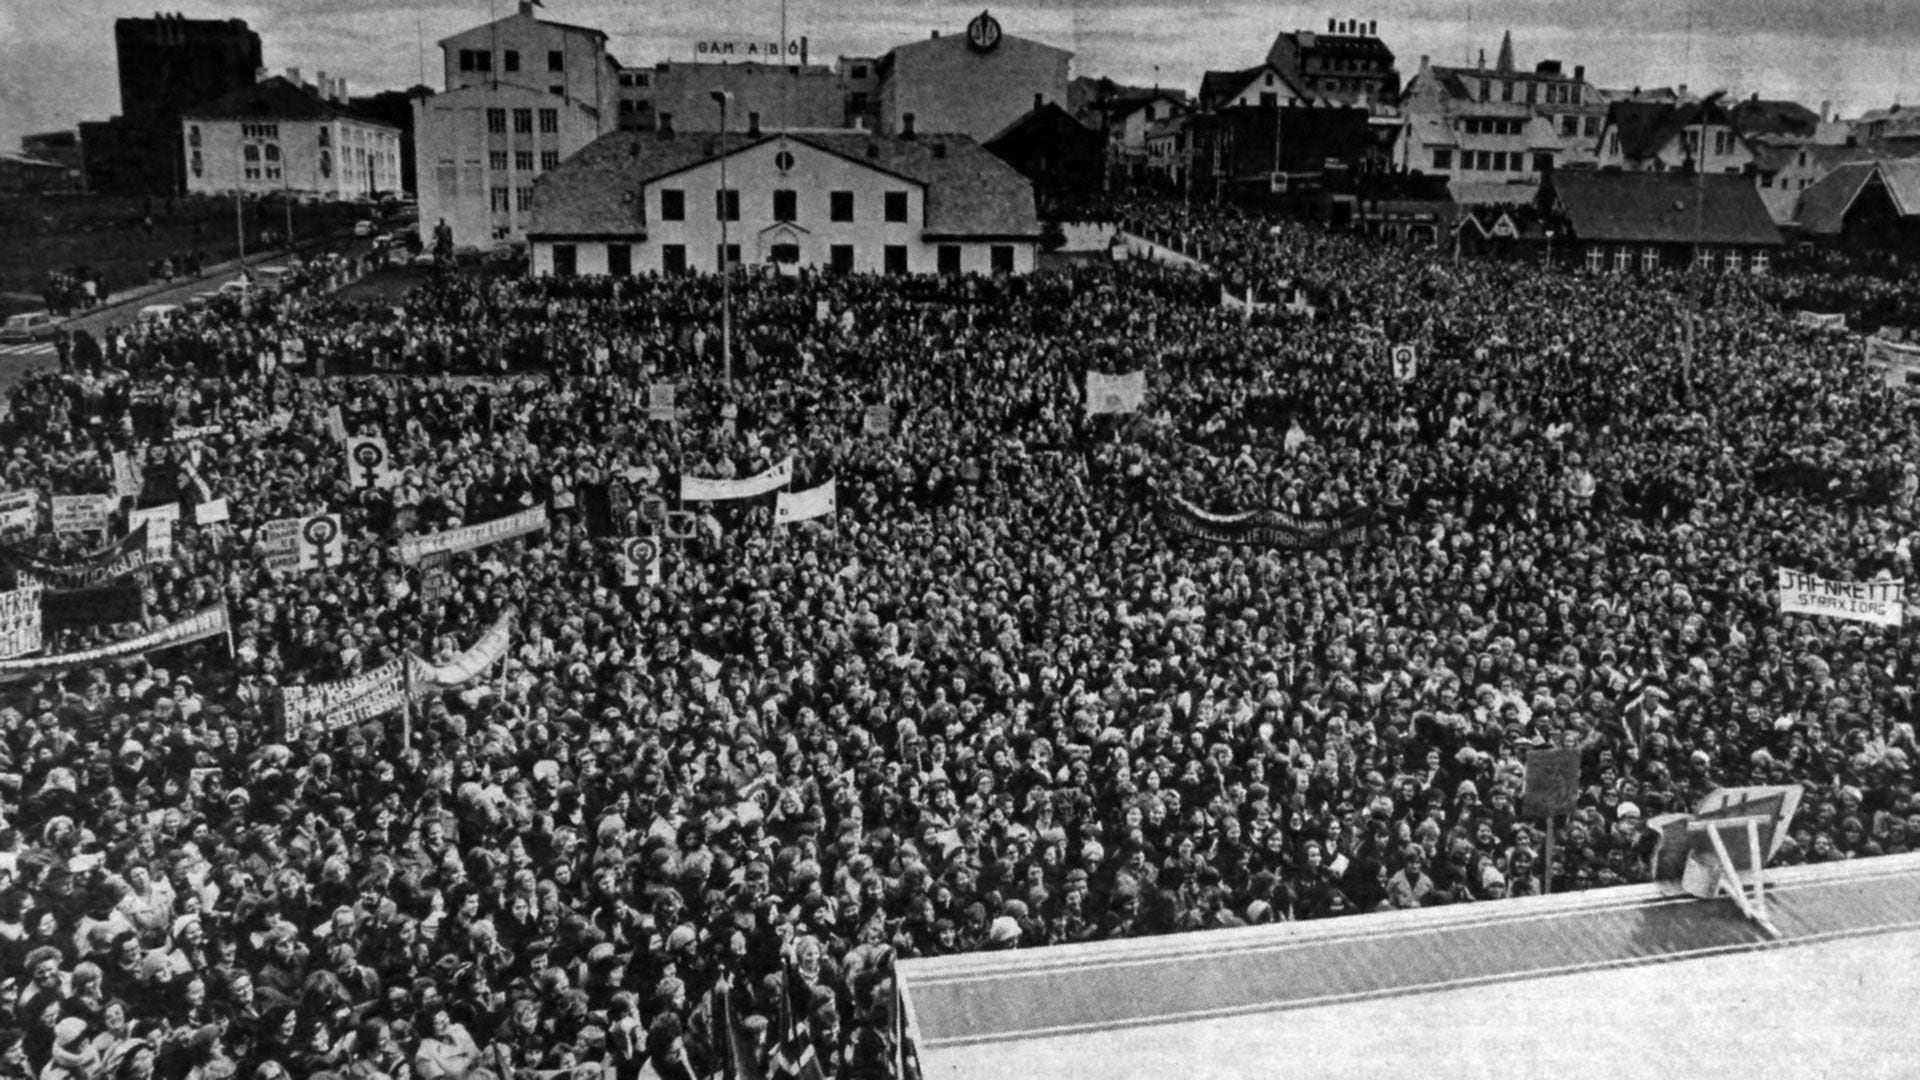 Hace 48 años tuvo lugar otra gran manifestación en Reikiavik, conocida como la "Huelga Nacional de Mujeres" 